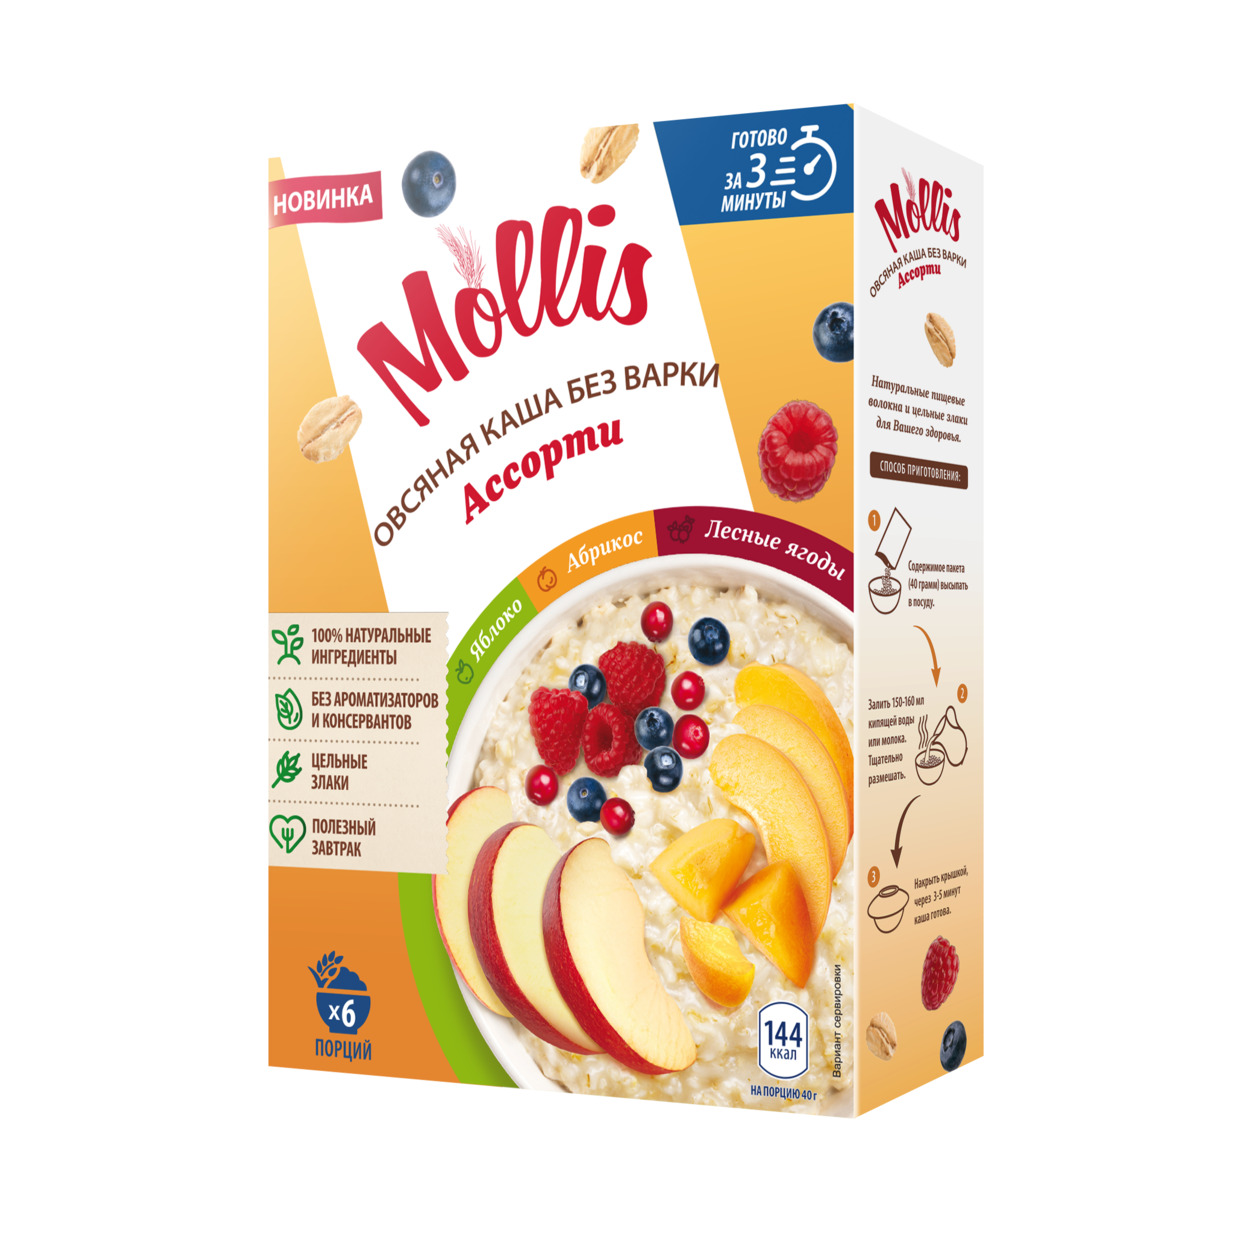 Продукт зерновой для завтрака каша овсяная ассорти без молока (с яблоком, с абрикосом, с лесными ягодами) т/м Mollis 6х40гр.